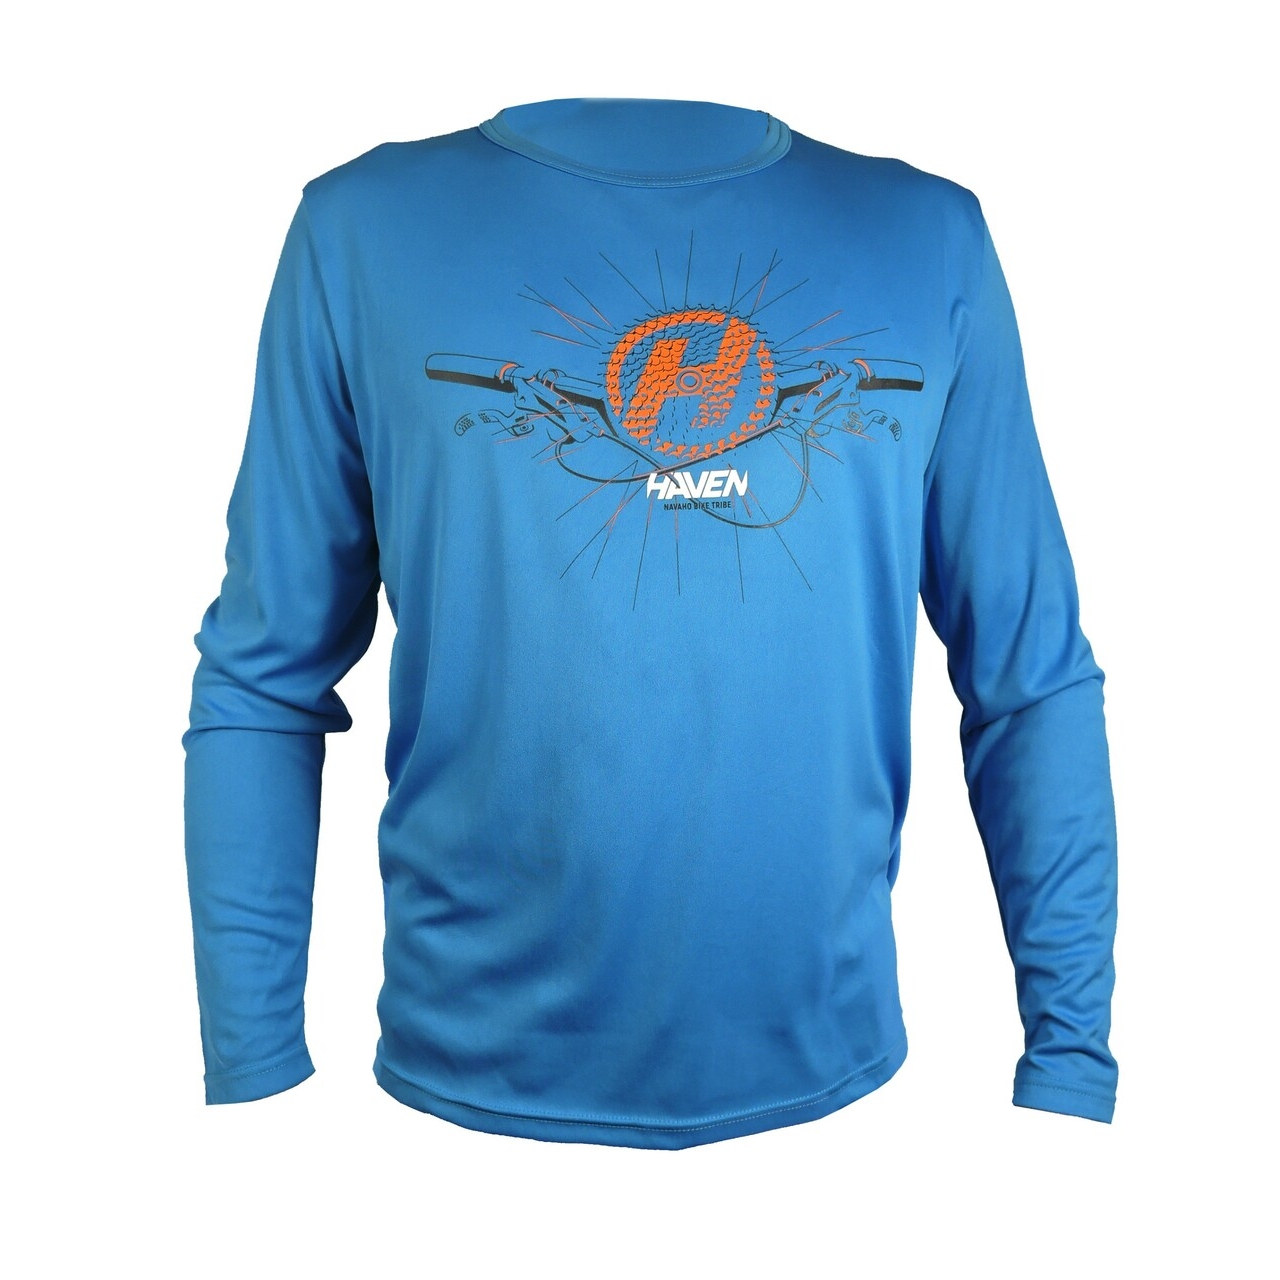 Tričko s dlouhým rukávem Haven Navaho II - modré-oranžové, L